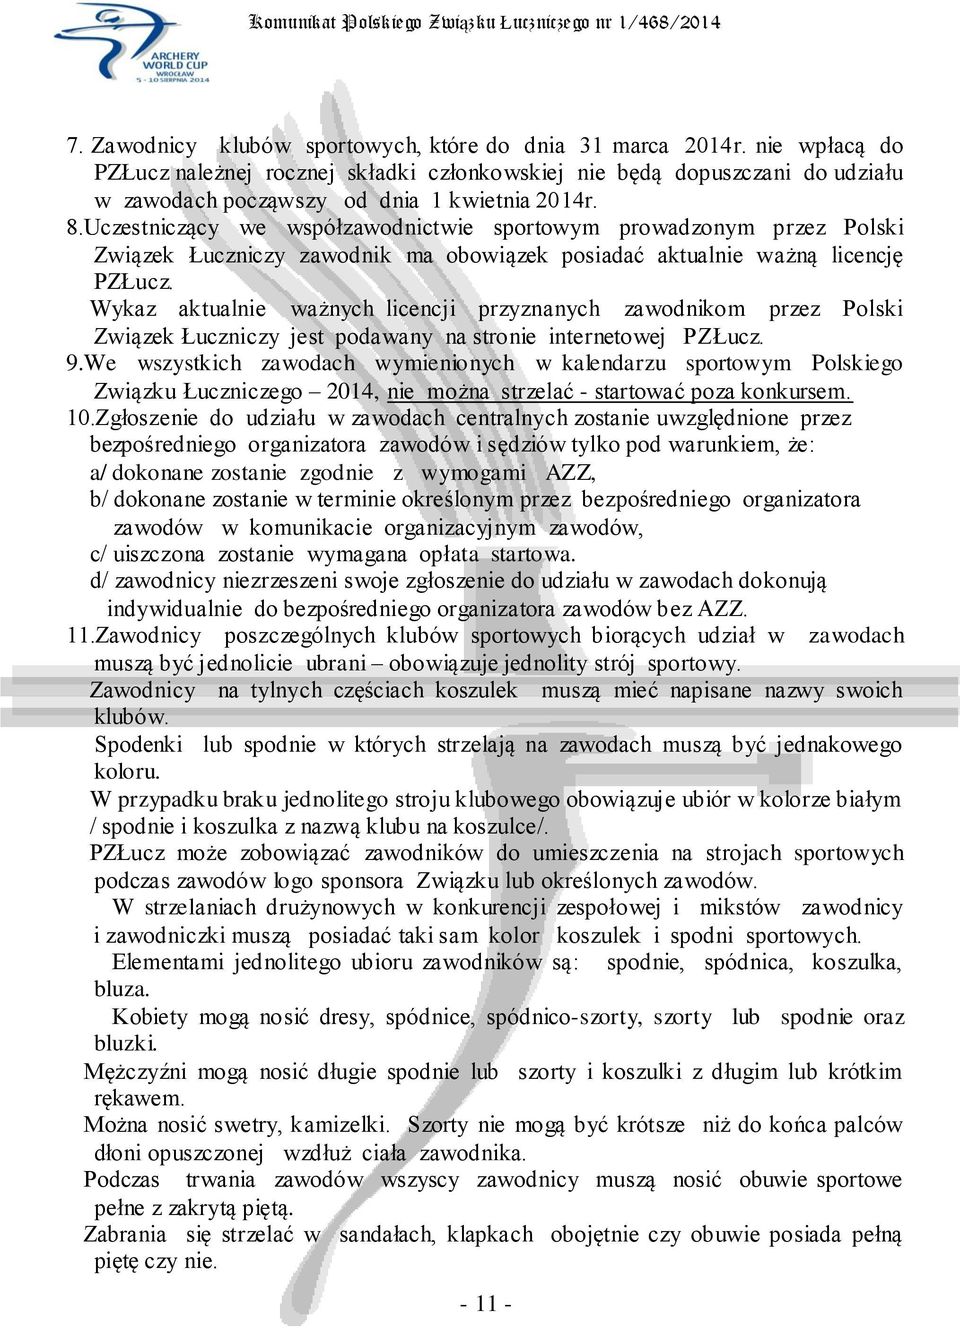 Wykaz aktualnie ważnych licencji przyznanych zawodnikom przez Polski Związek Łuczniczy jest podawany na stronie internetowej PZŁucz. 9.